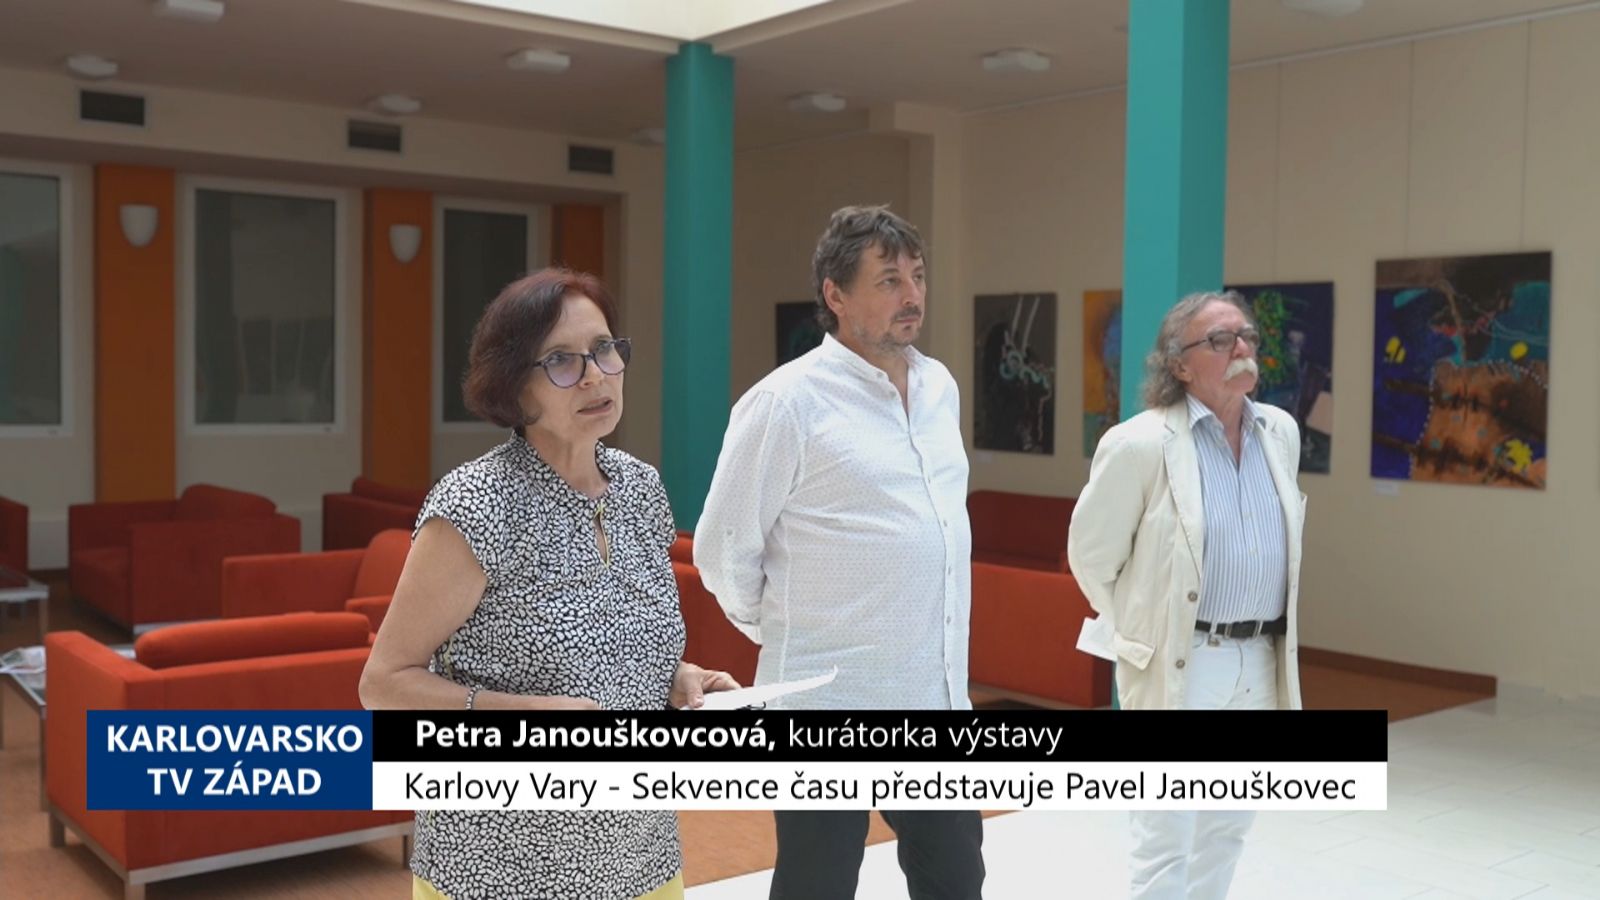 Karlovy Vary: Sekvence času představuje Pavel Janouškovec (TV Západ)